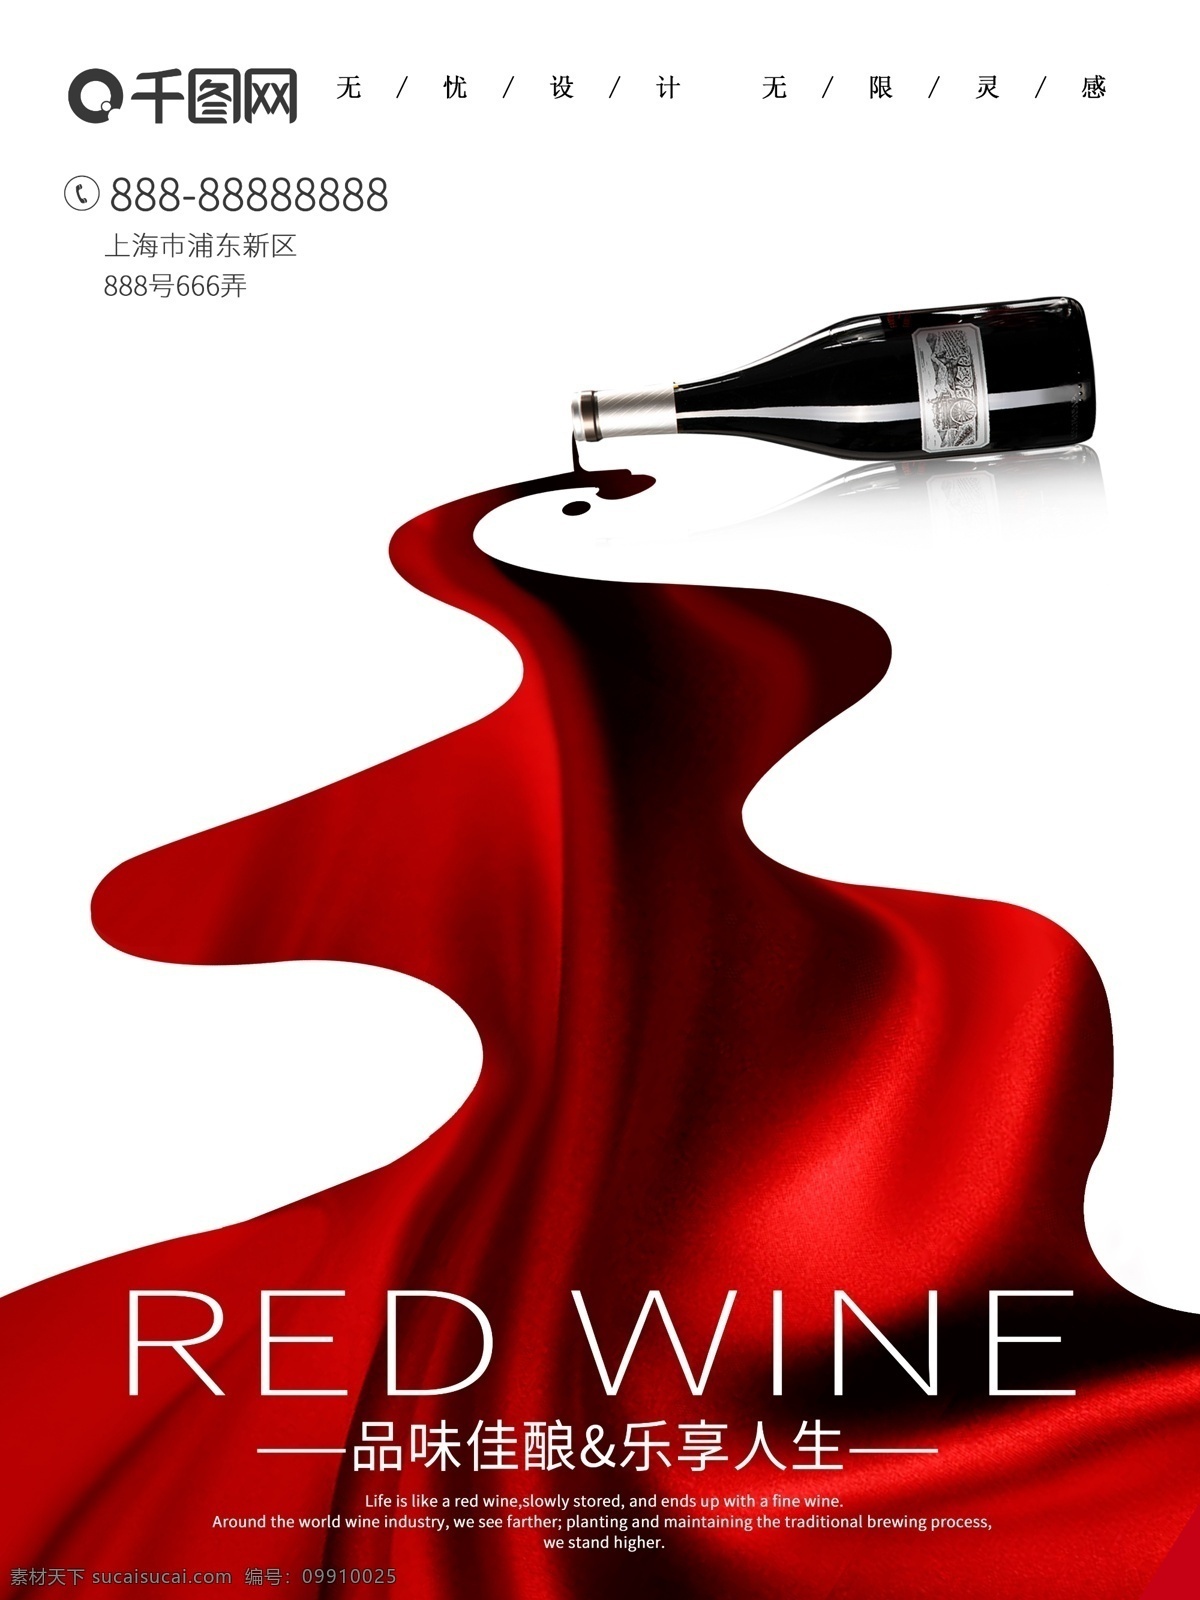 法国 进口 葡萄酒 原 瓶 红酒 大气 高档 时尚 海报 进口葡萄酒 进口红酒 酒 酒海报 红酒海报 葡萄酒海报